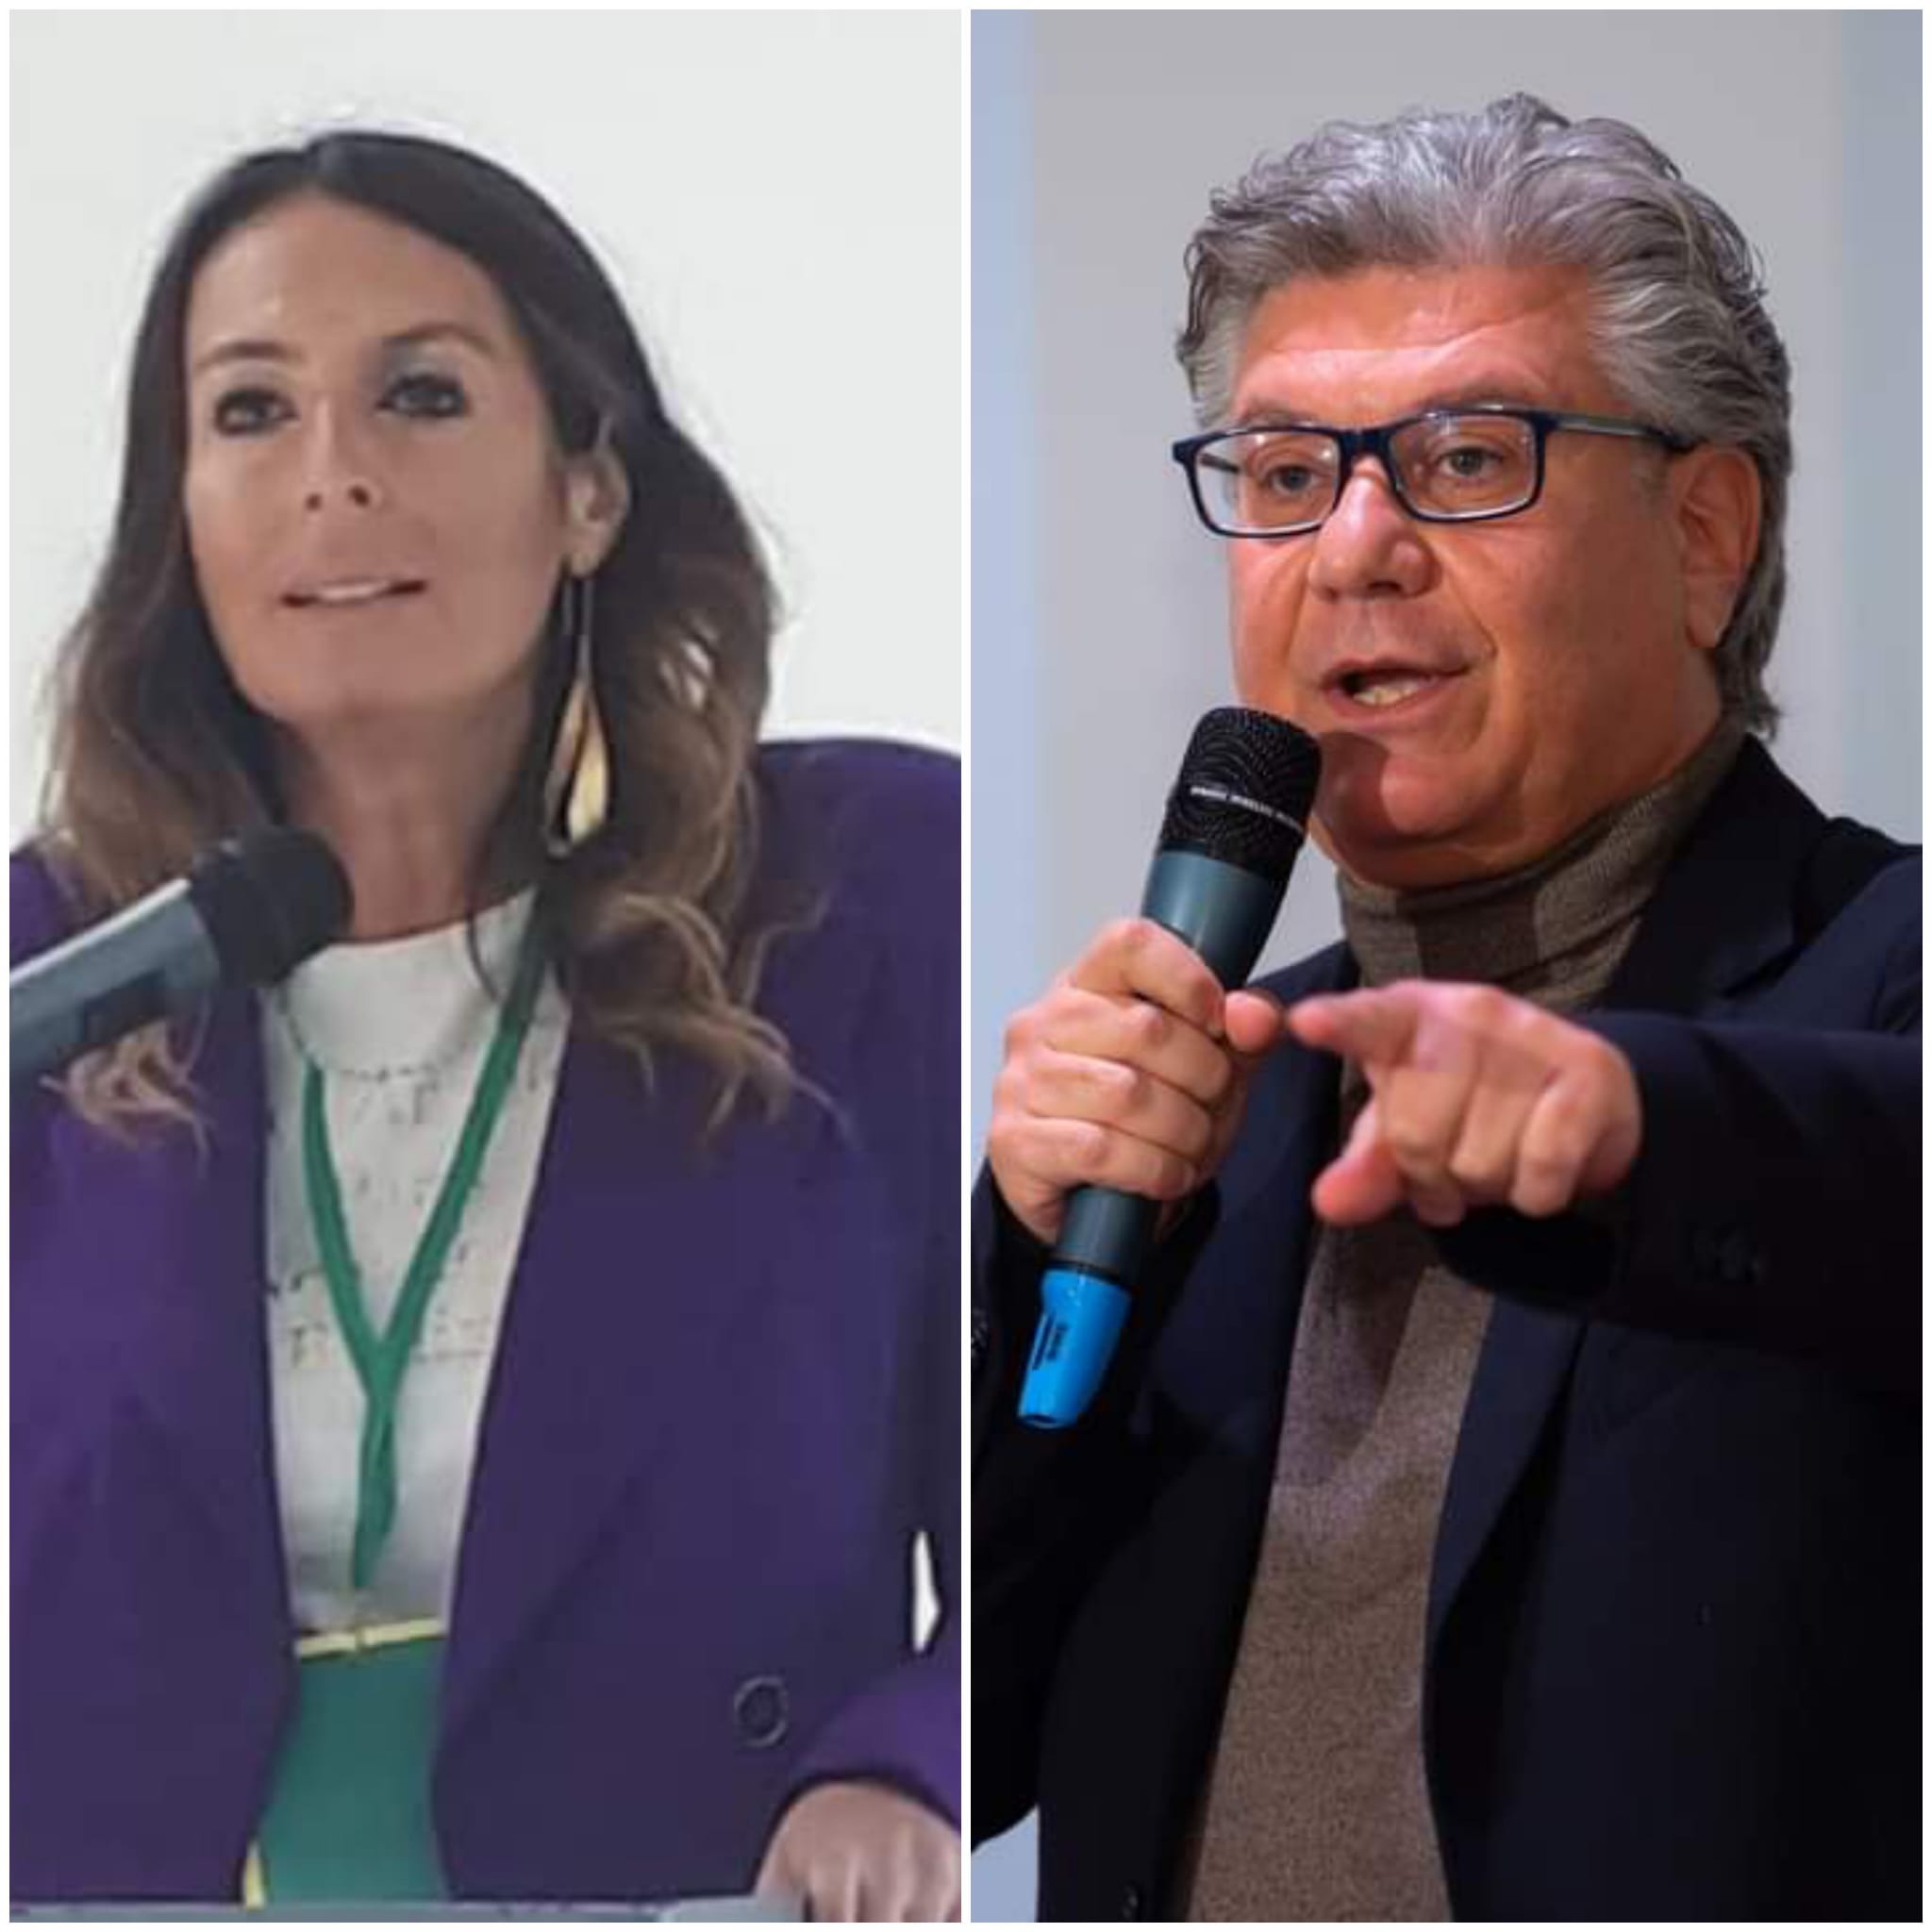 Fiorella Zabatta e Vincenzo Peretti co-portavoce di Europa Verde Campania